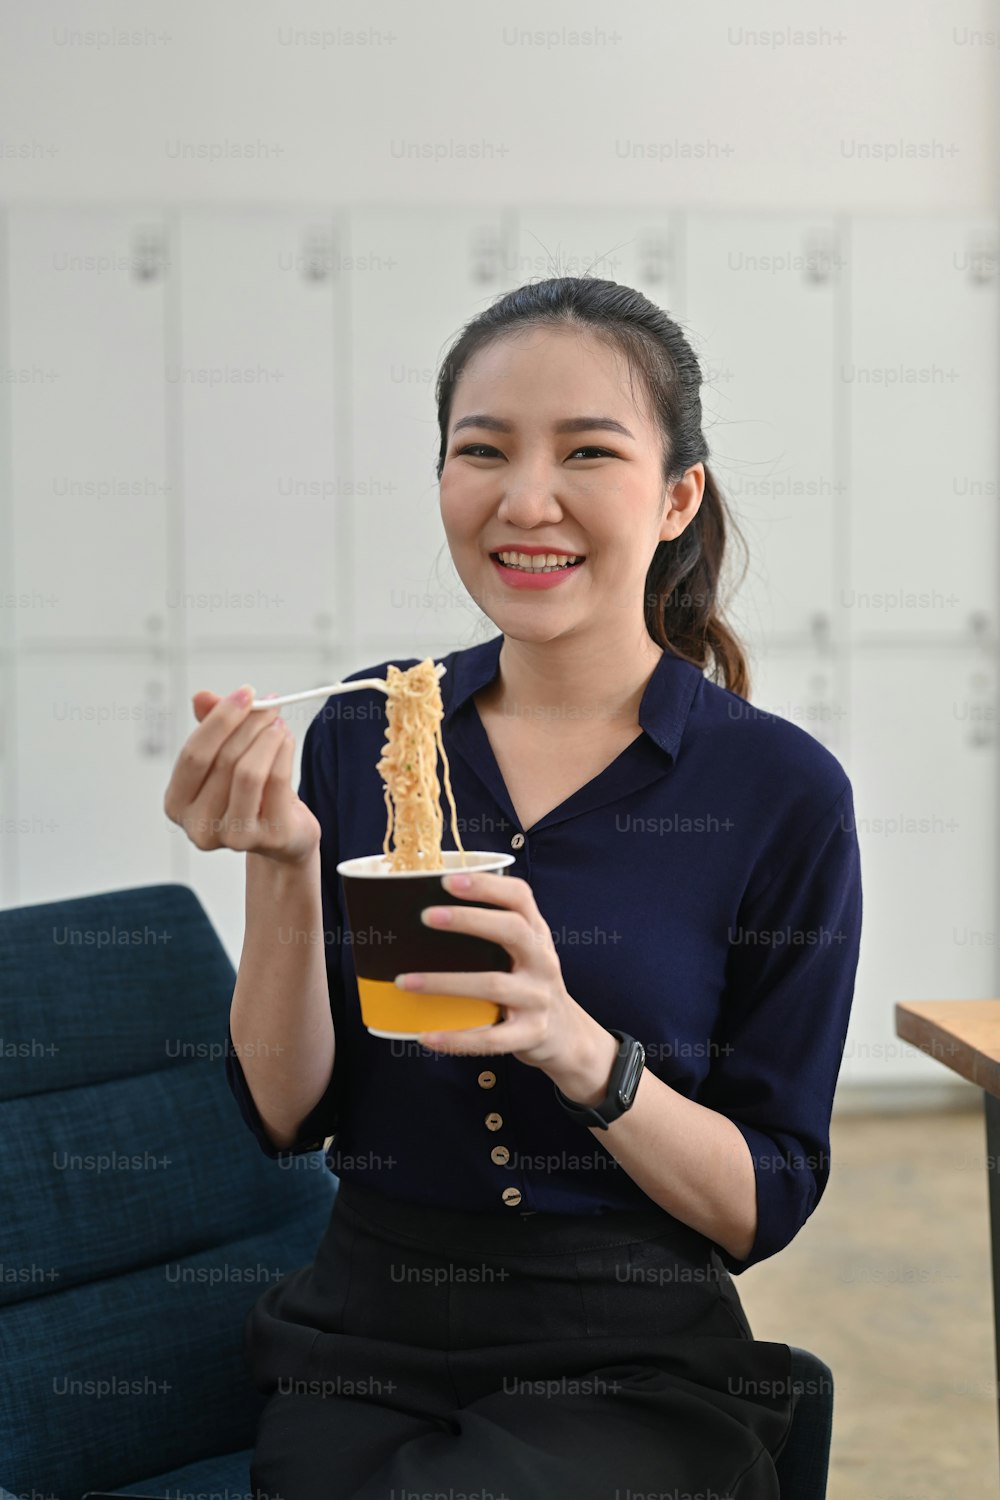 웃고 있는 아시아 여자는 사무실에서 인스턴트 국수를 먹는 플라스틱 포크를 들고 있다.